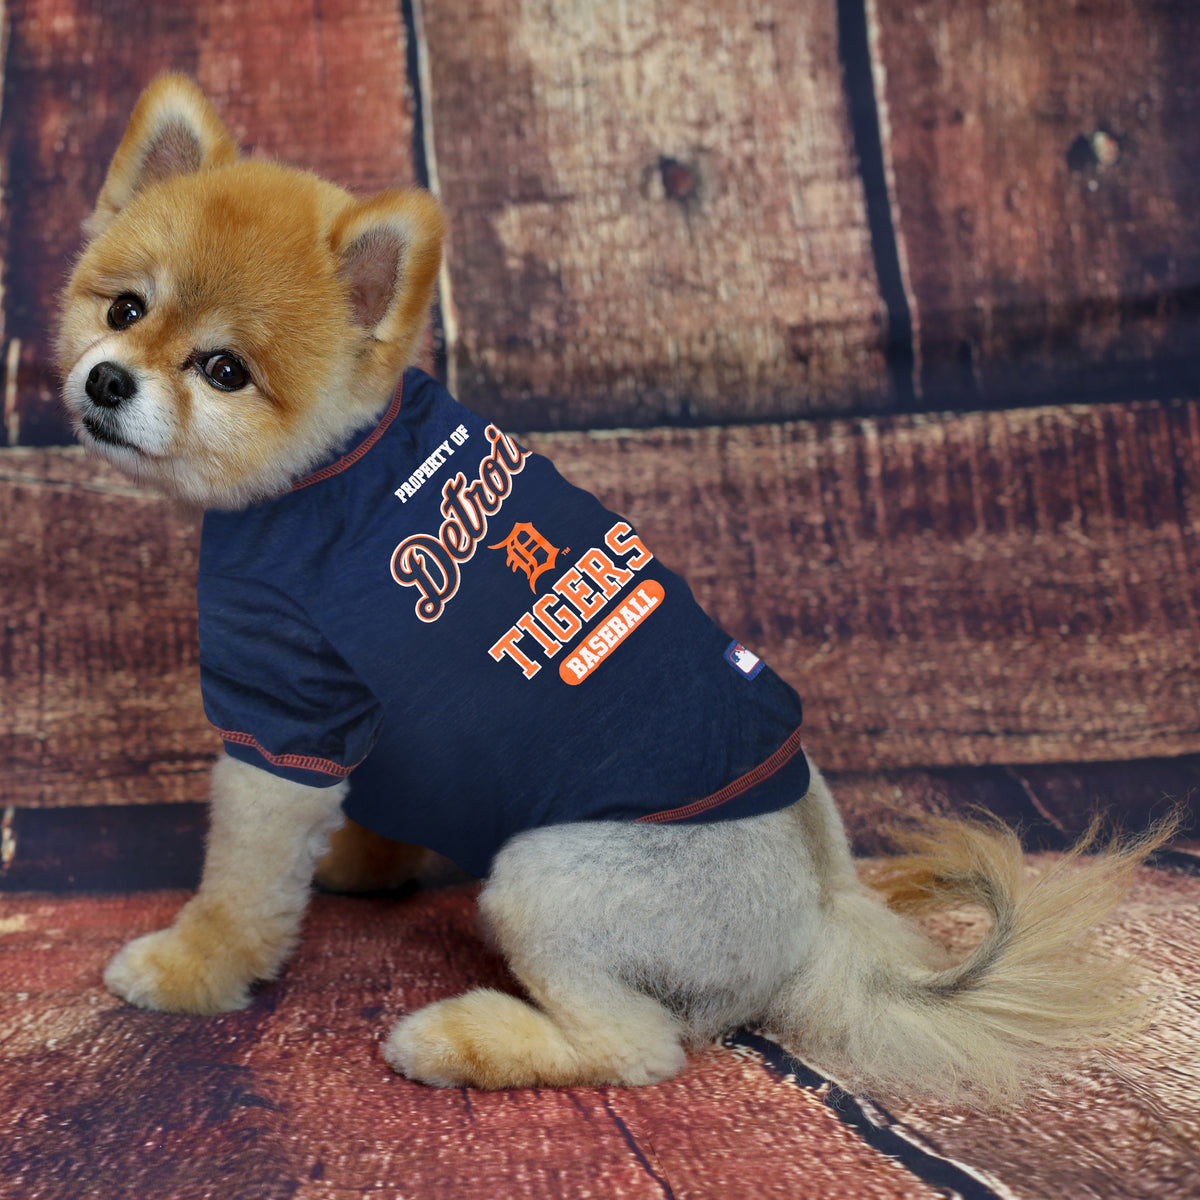 Boston Red Sox Dog Tee Shirt - Small